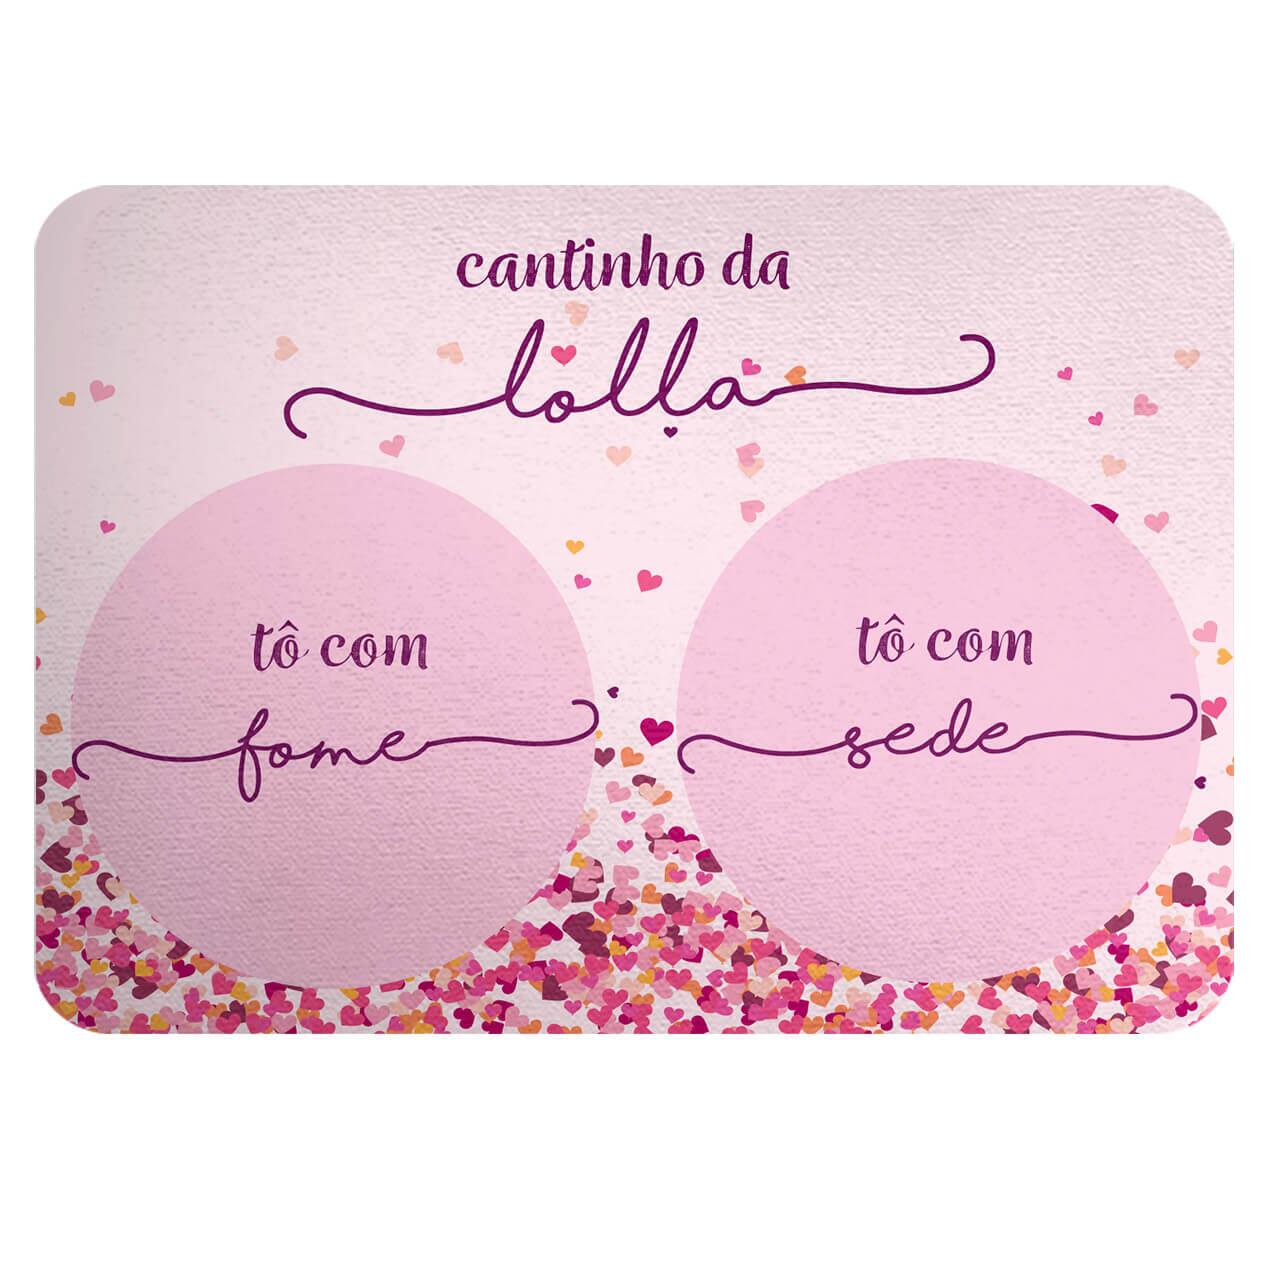 Kit Comedouro + Bebedouro + Tapete Personalizados Com o Nome do Pet - Corações Rosas